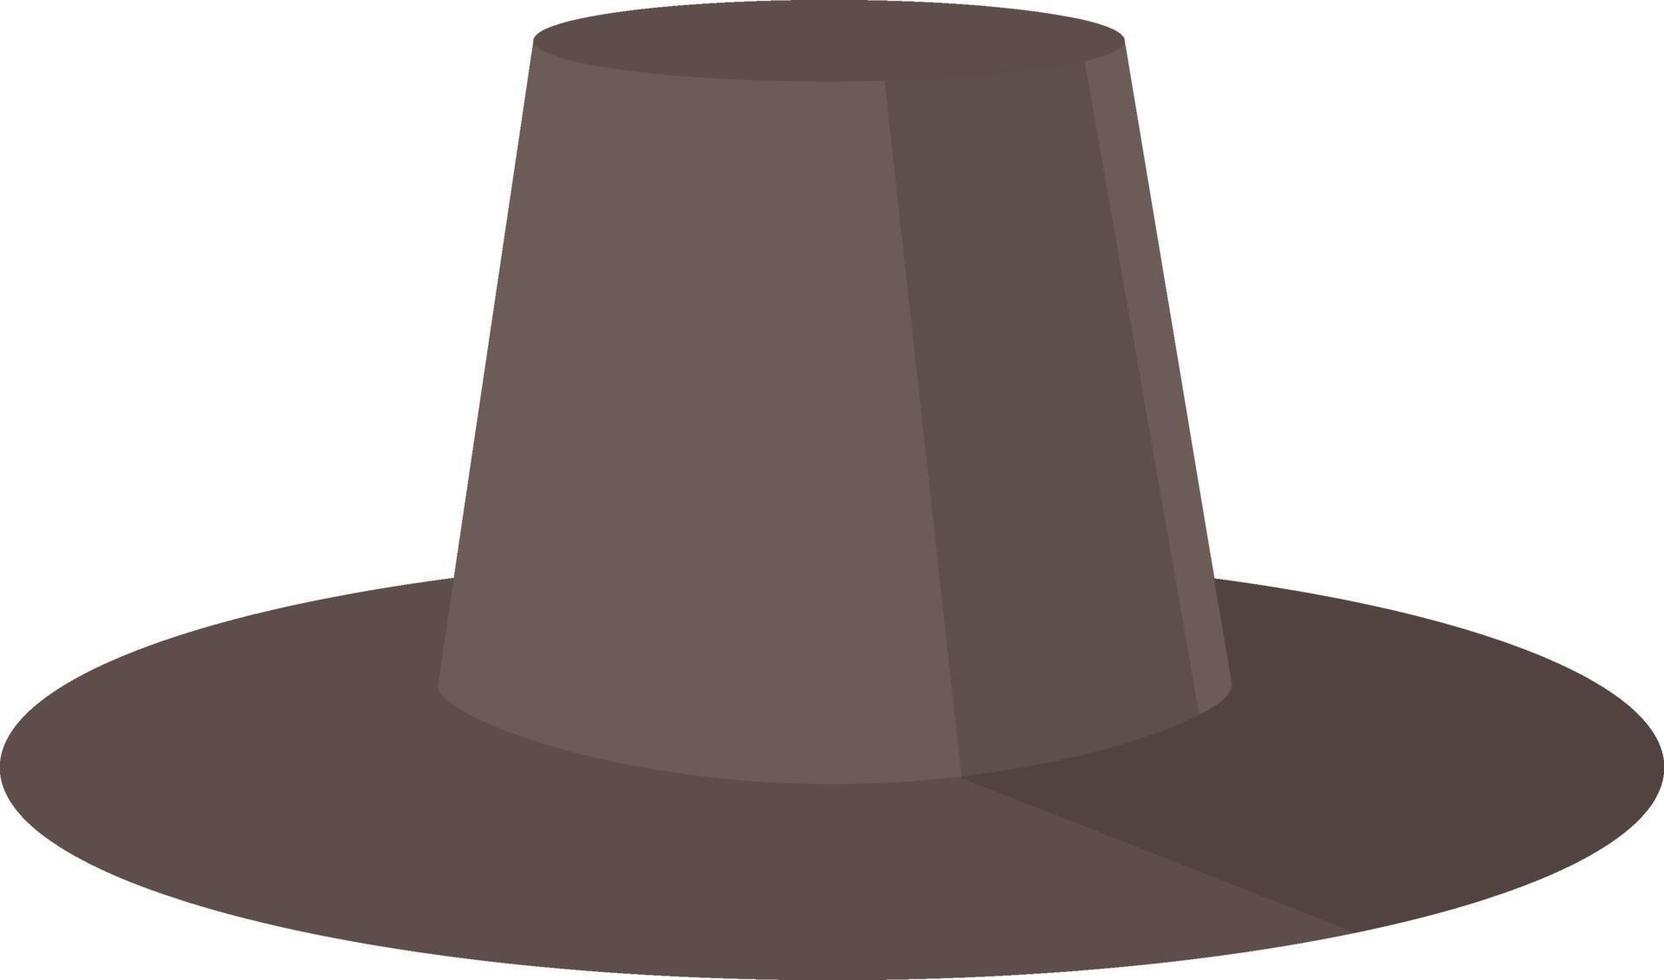 chapeau noir homme, illustration, vecteur sur fond blanc